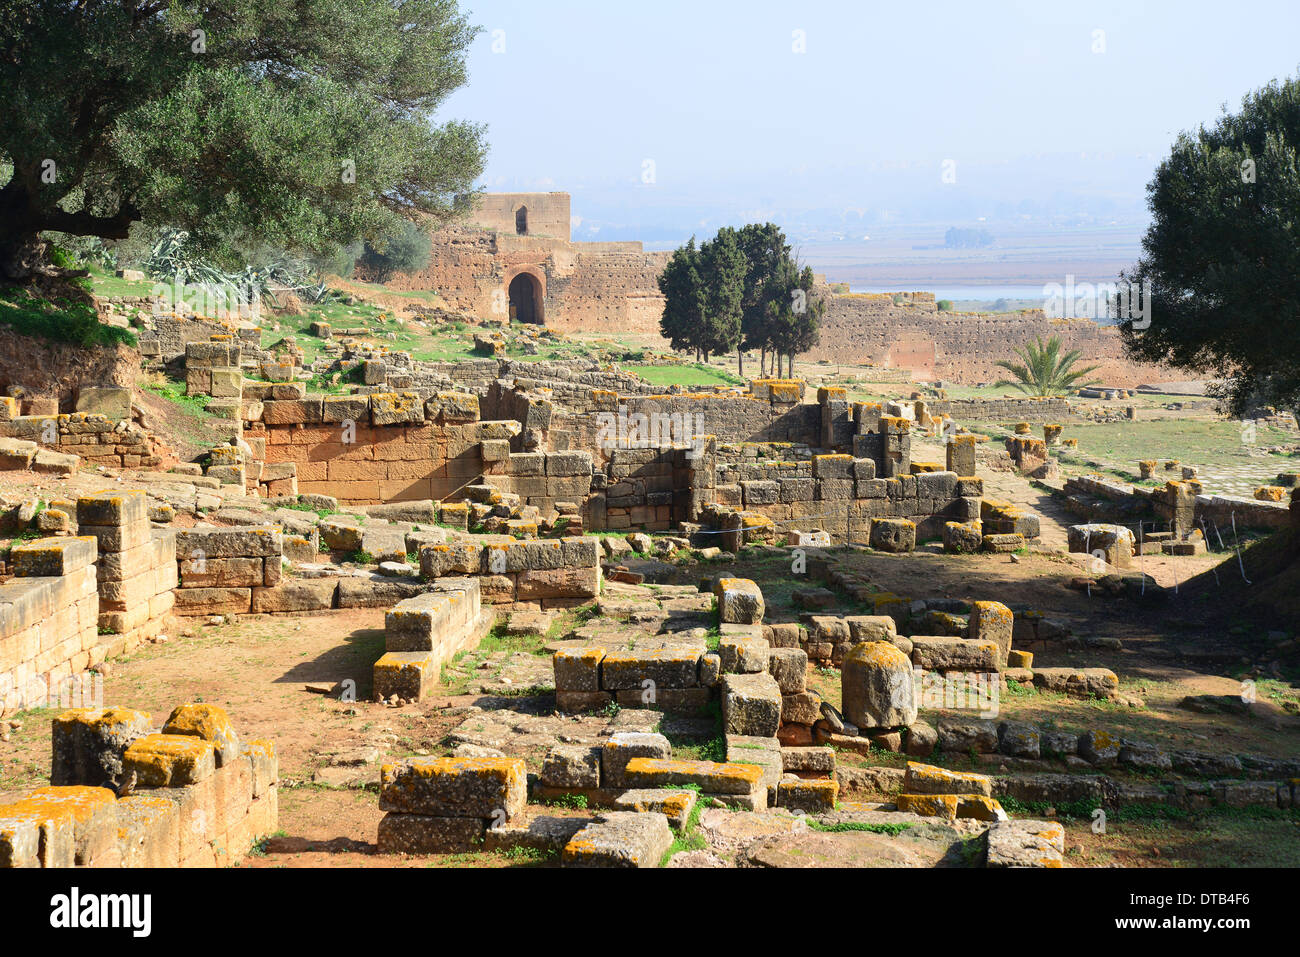 Römische Ausgrabungsstätte Chellah (Sala Colonia), Rabat, Rabat-Salé-Zemmour-Zaer Region, Königreich Marokko Stockfoto